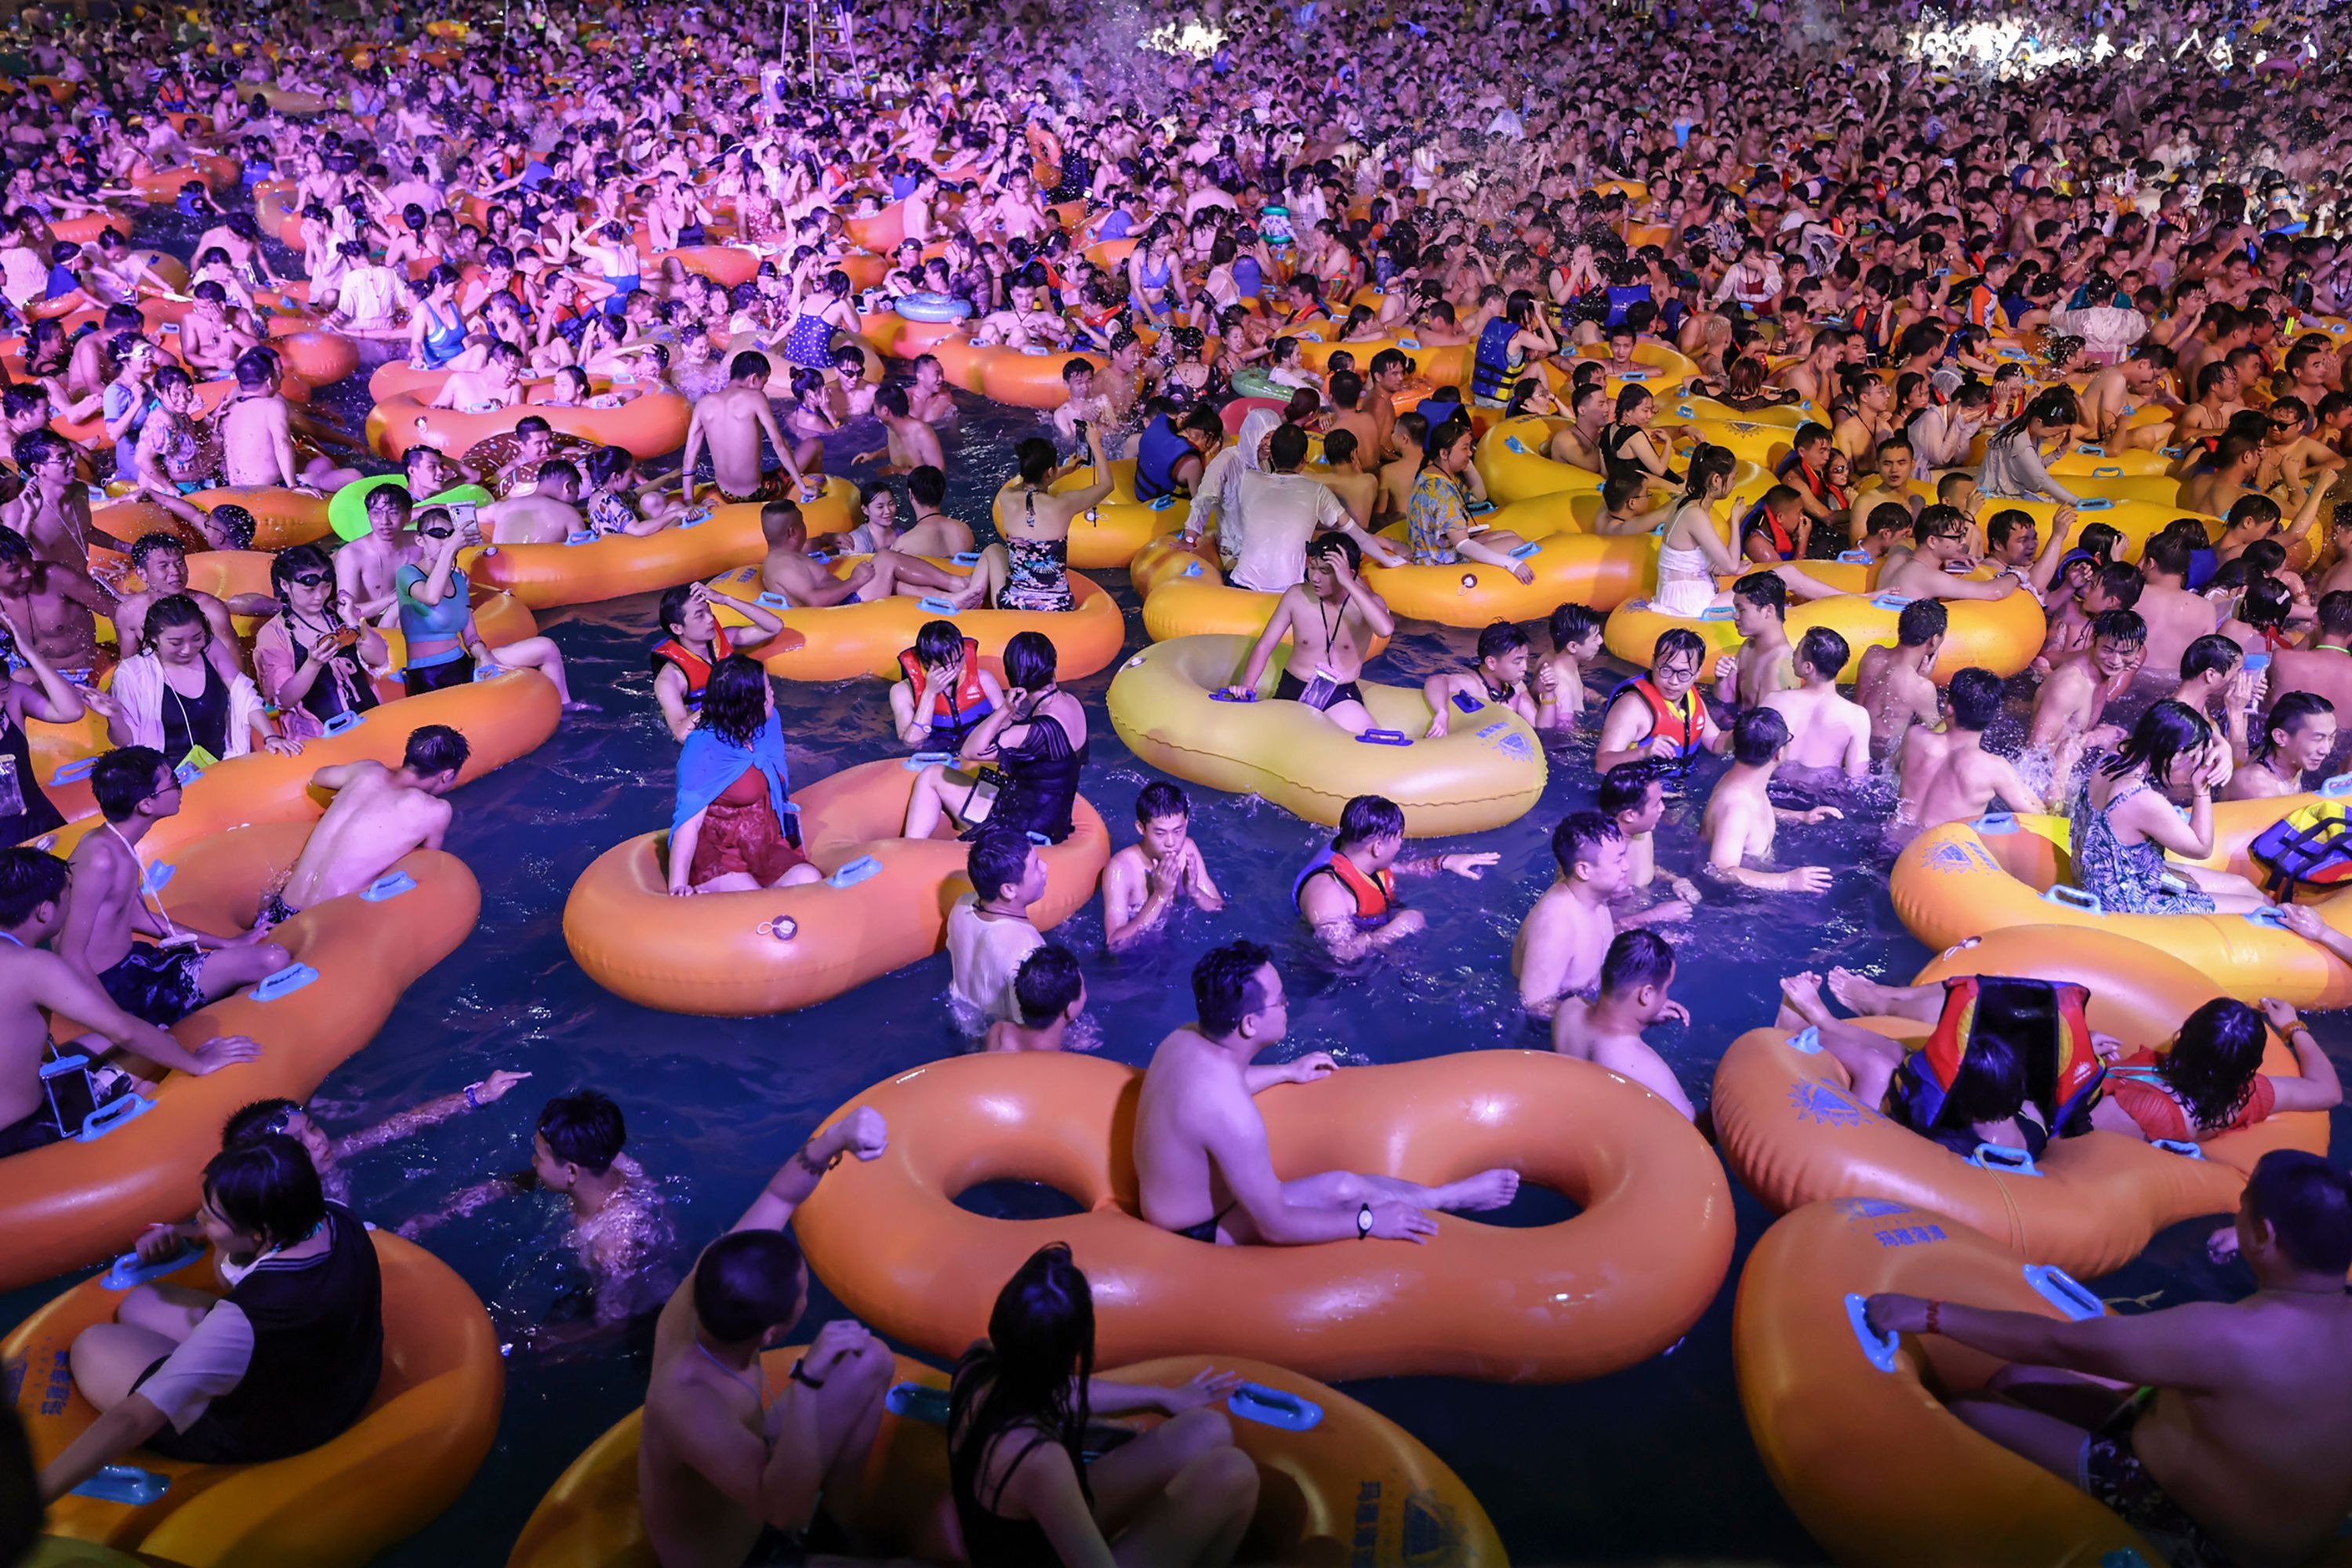 انتشرت صور مهرجان في حديقة مائية في ووهان في منتصف أغسطس.